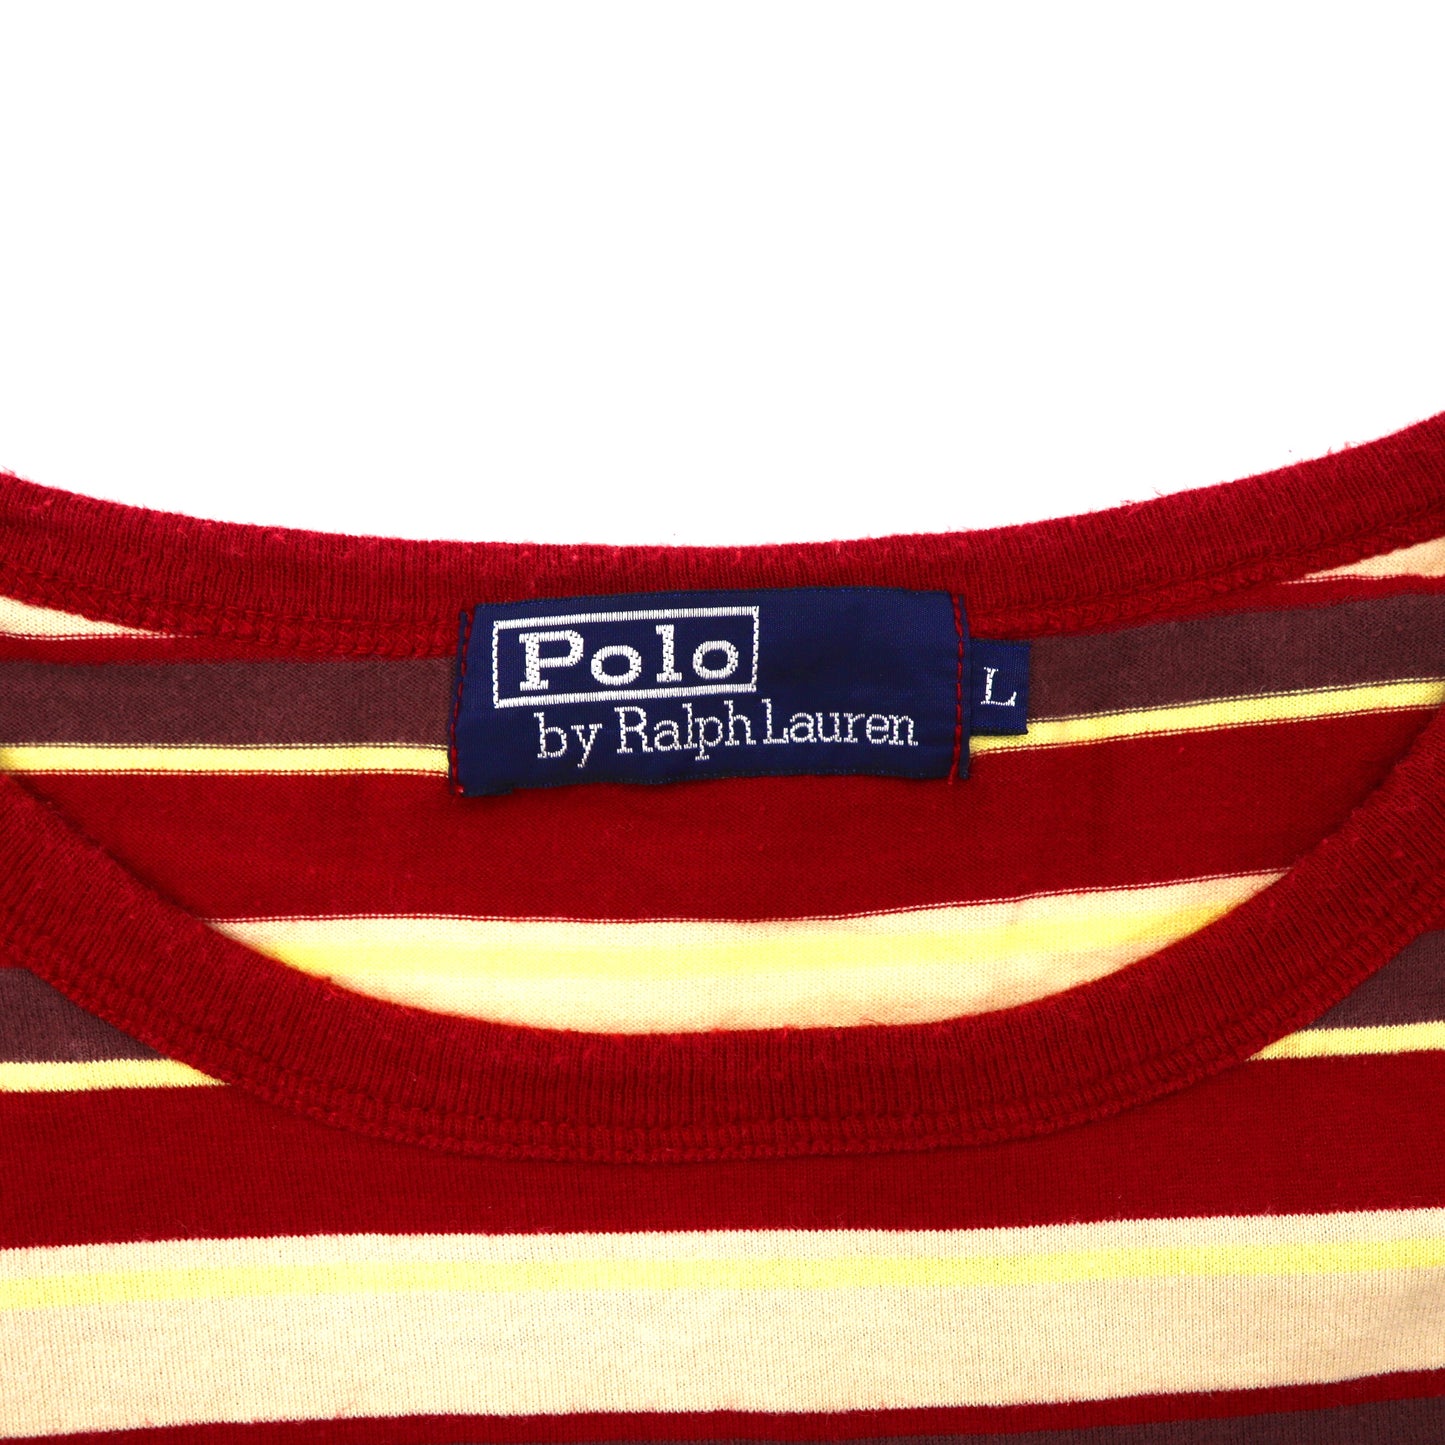 Polo by Ralph Lauren ボーダーTシャツ L レッド コットン